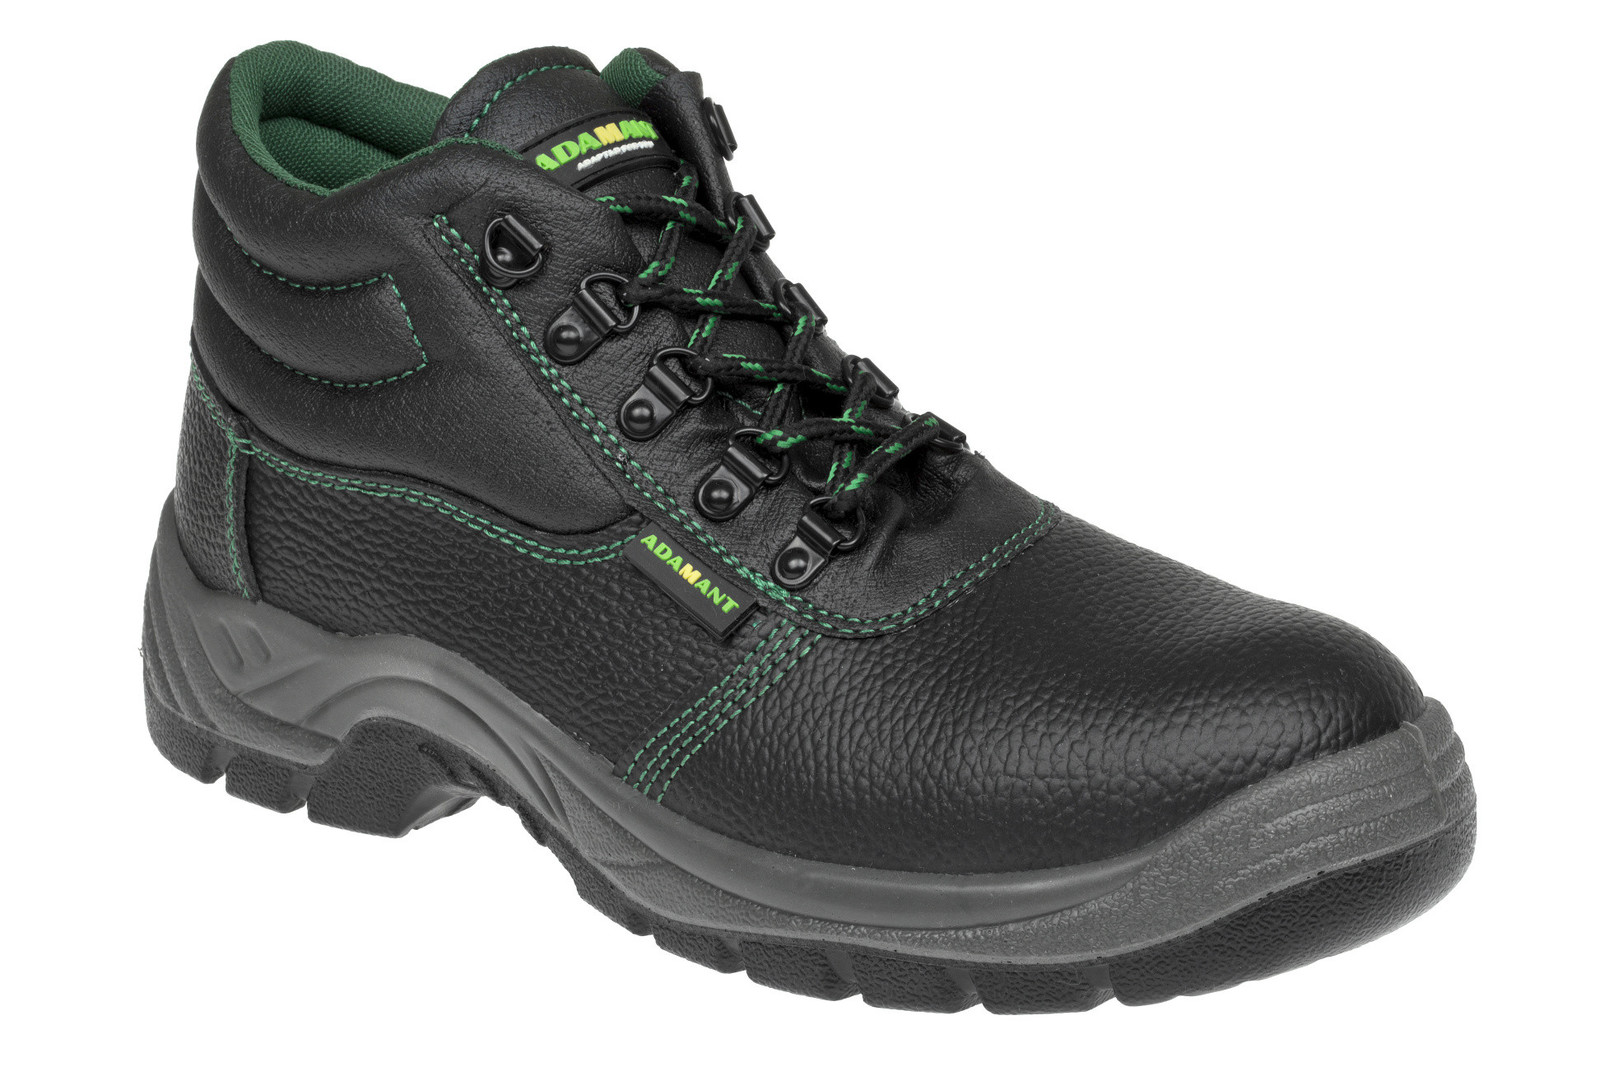 Bezpečnostná obuv Adamant Classic S1P - veľkosť: 36, farba: čierna